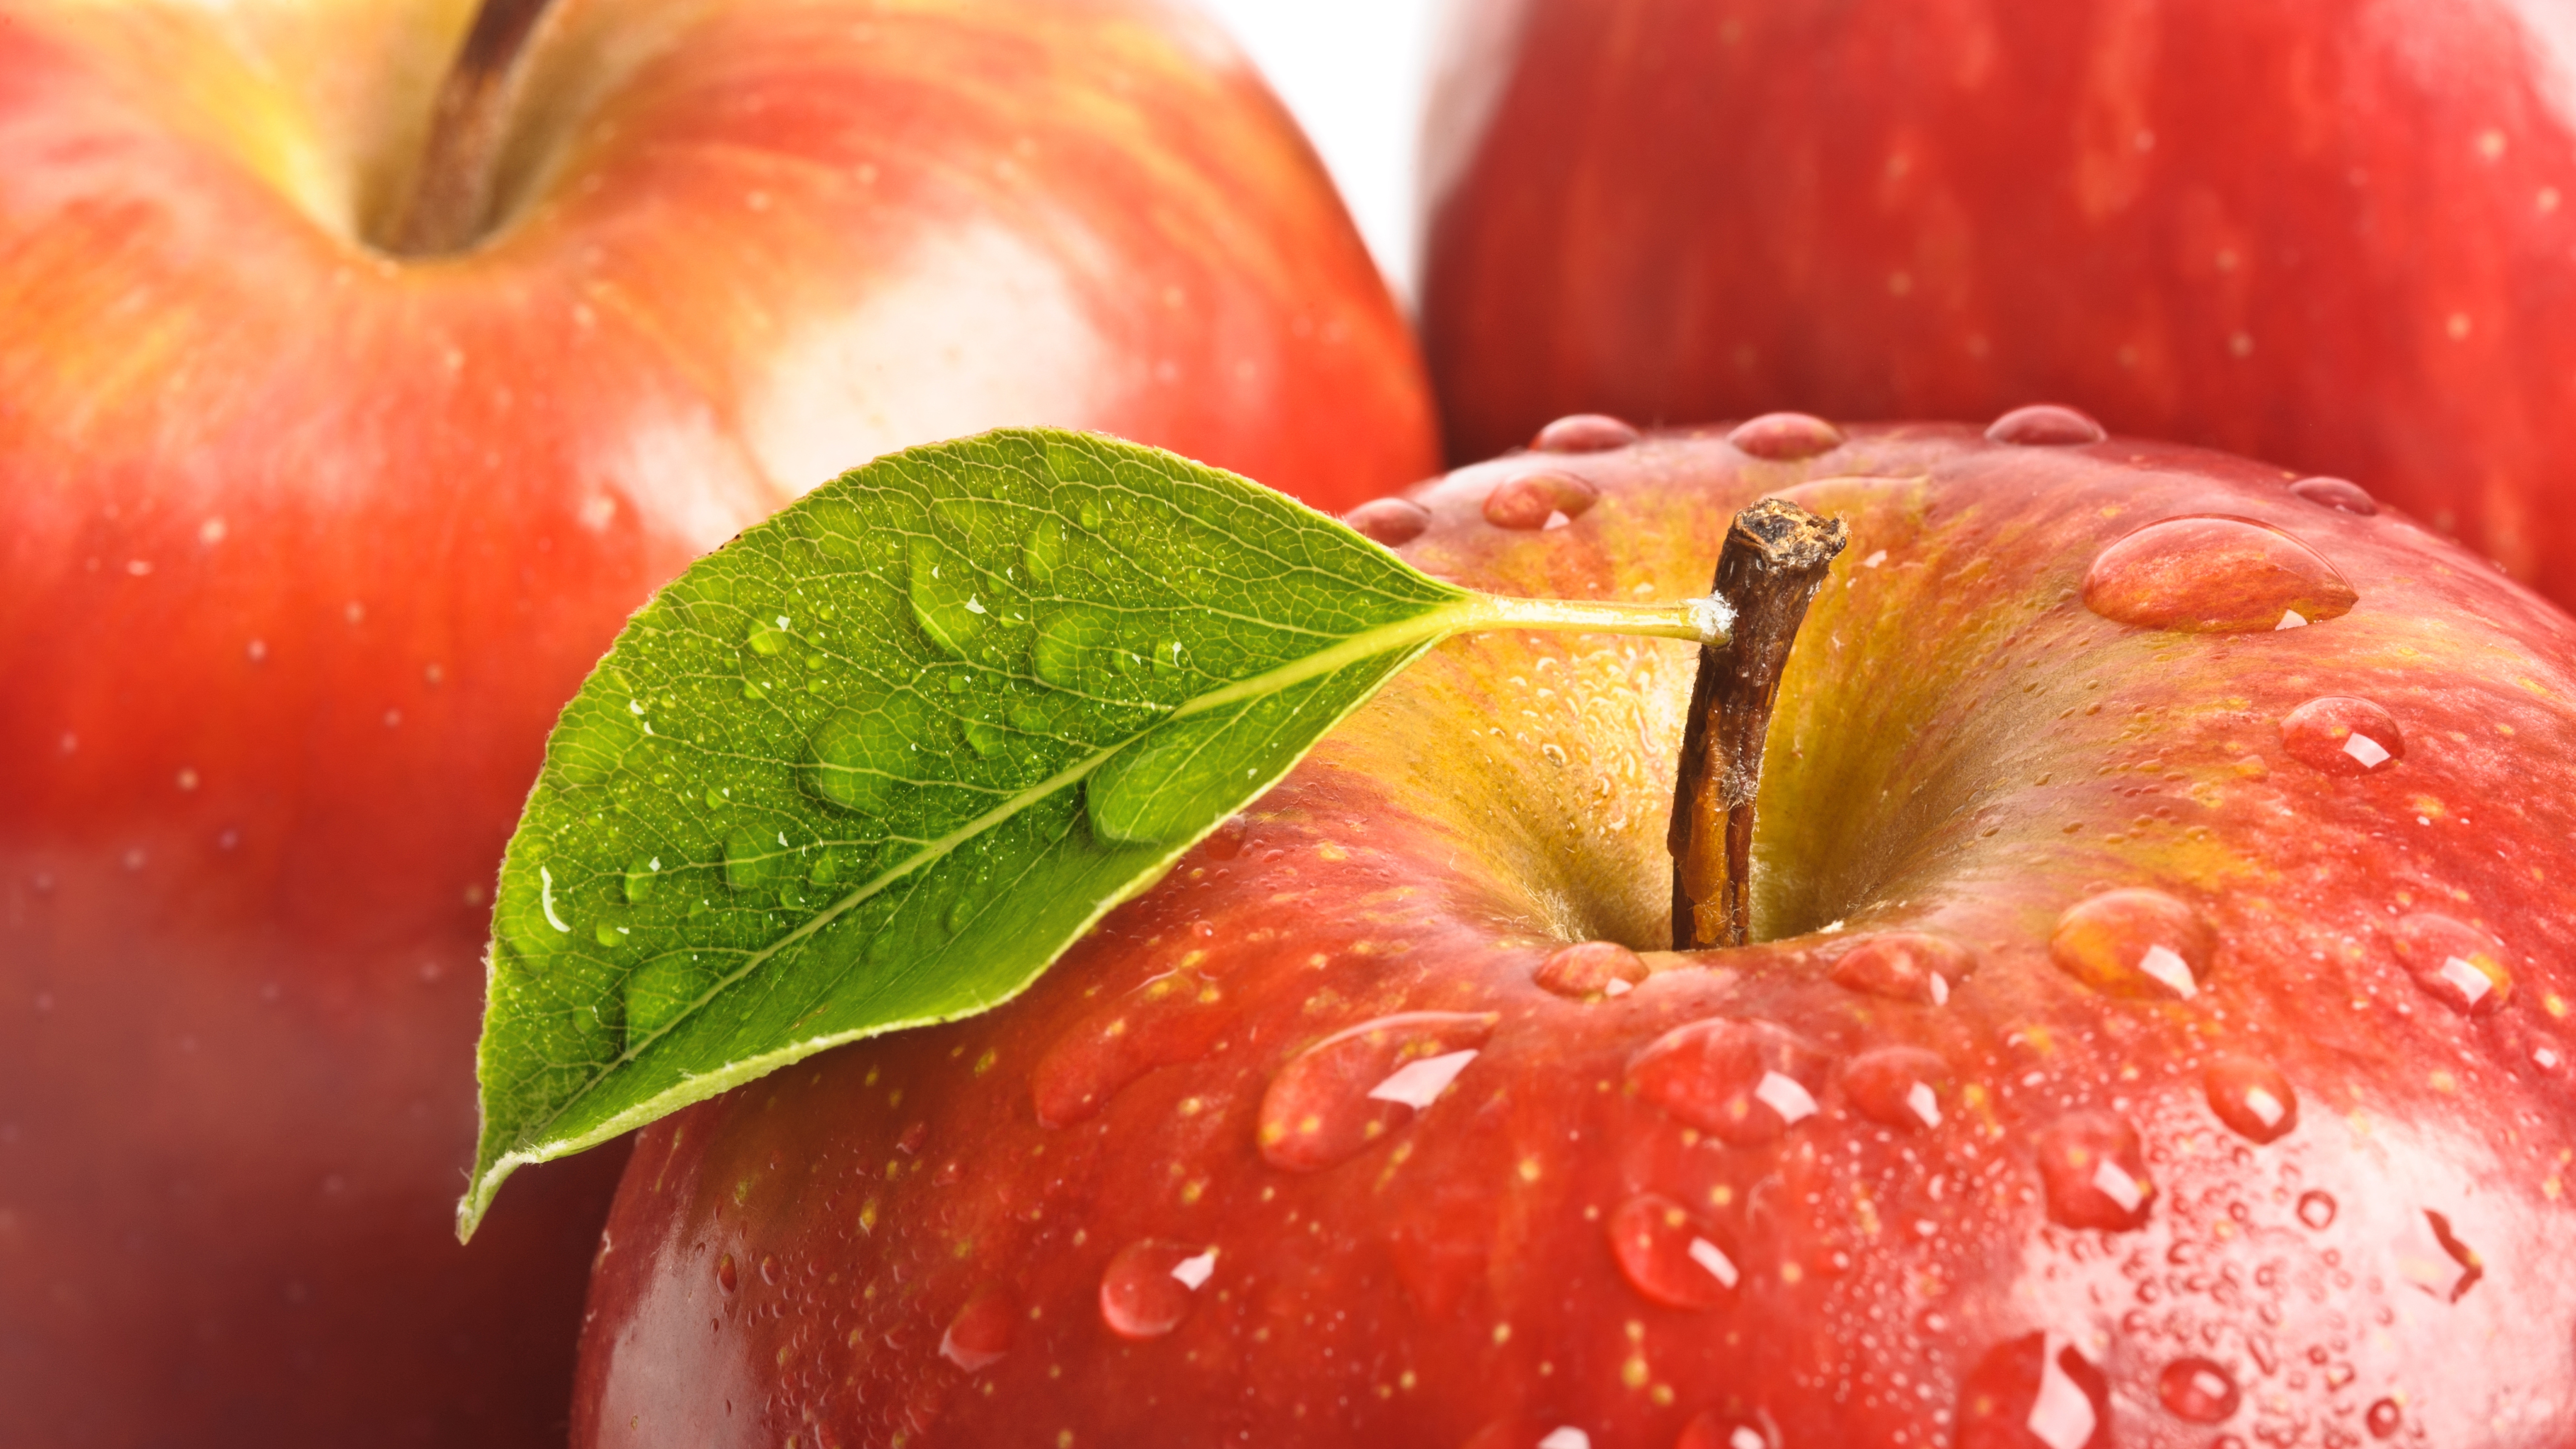 Descarga gratuita de fondo de pantalla para móvil de Frutas, Manzana, Alimento.